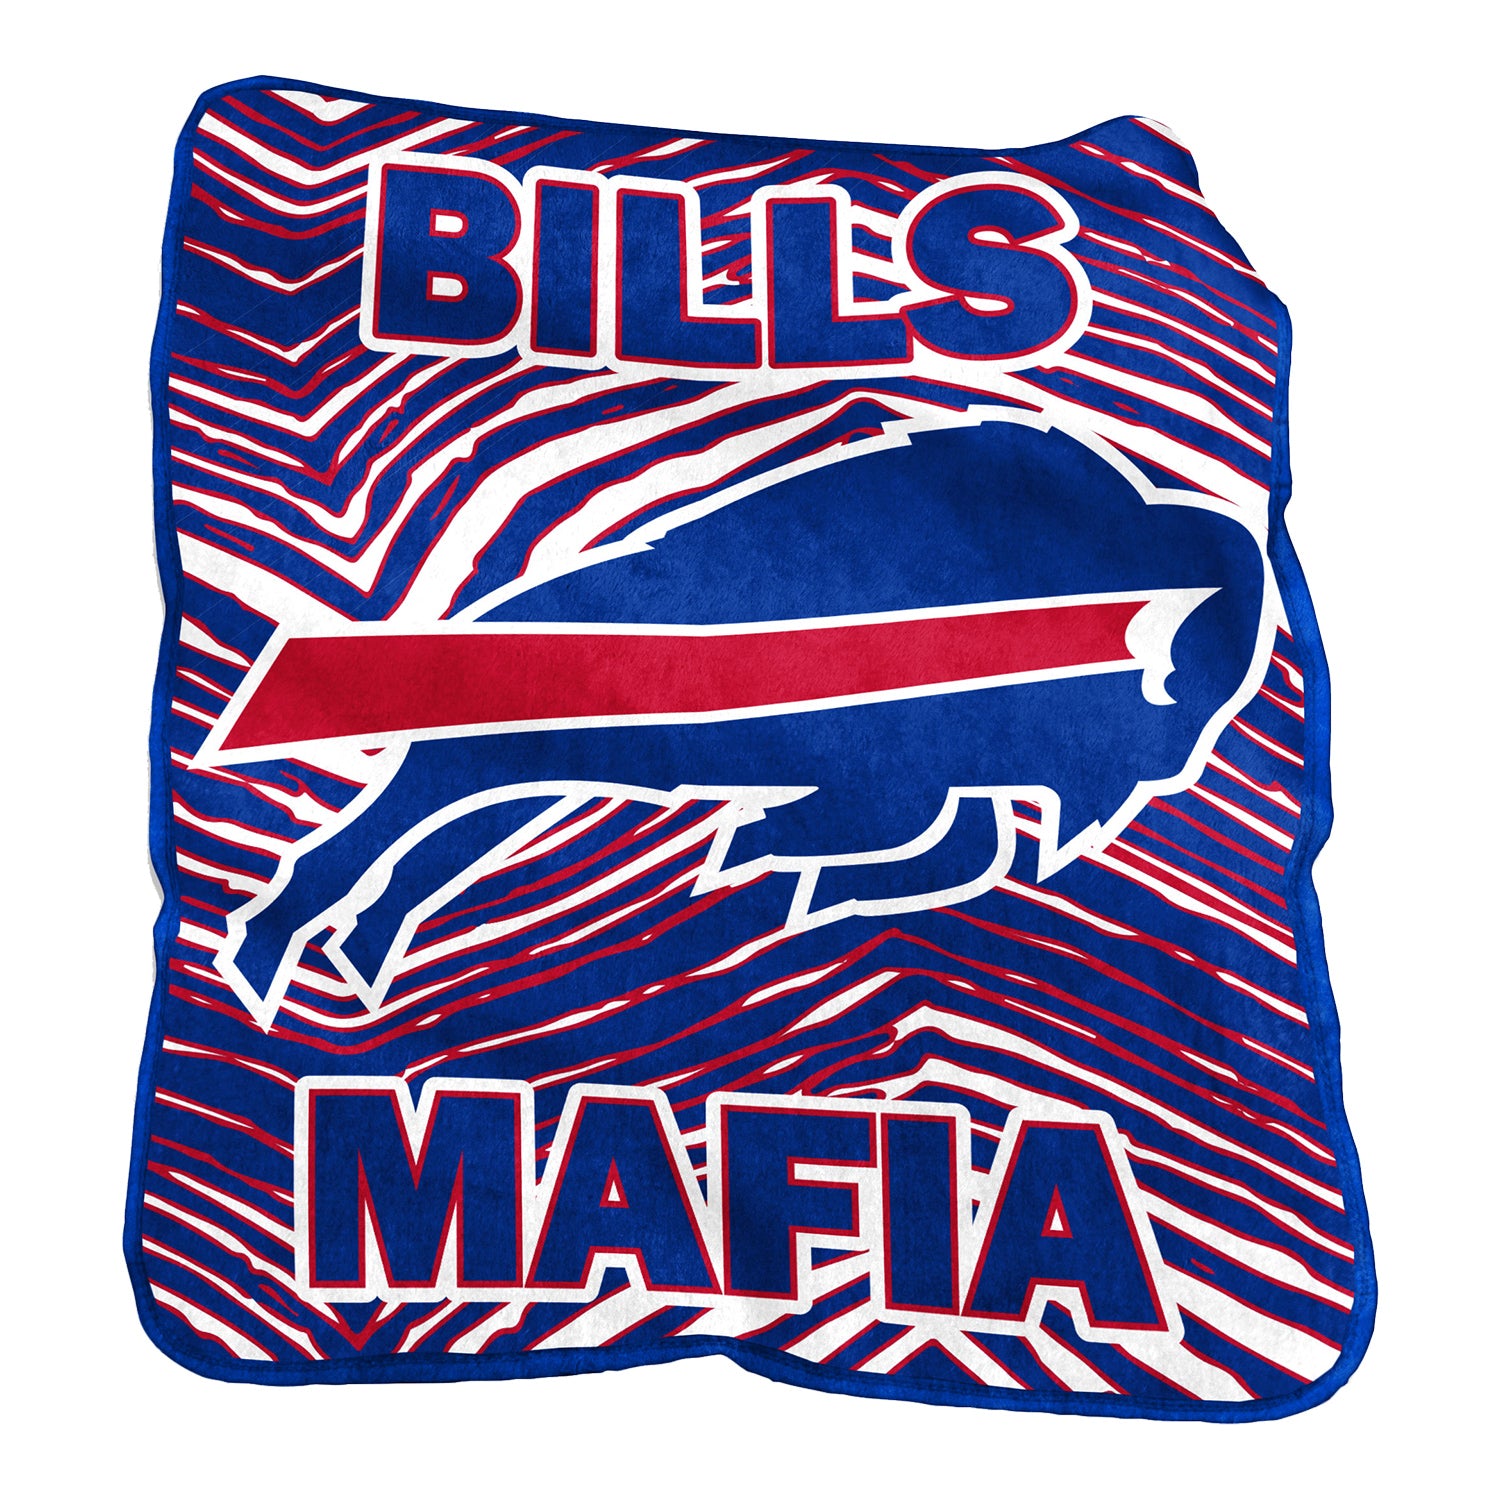 bills mafia blanket